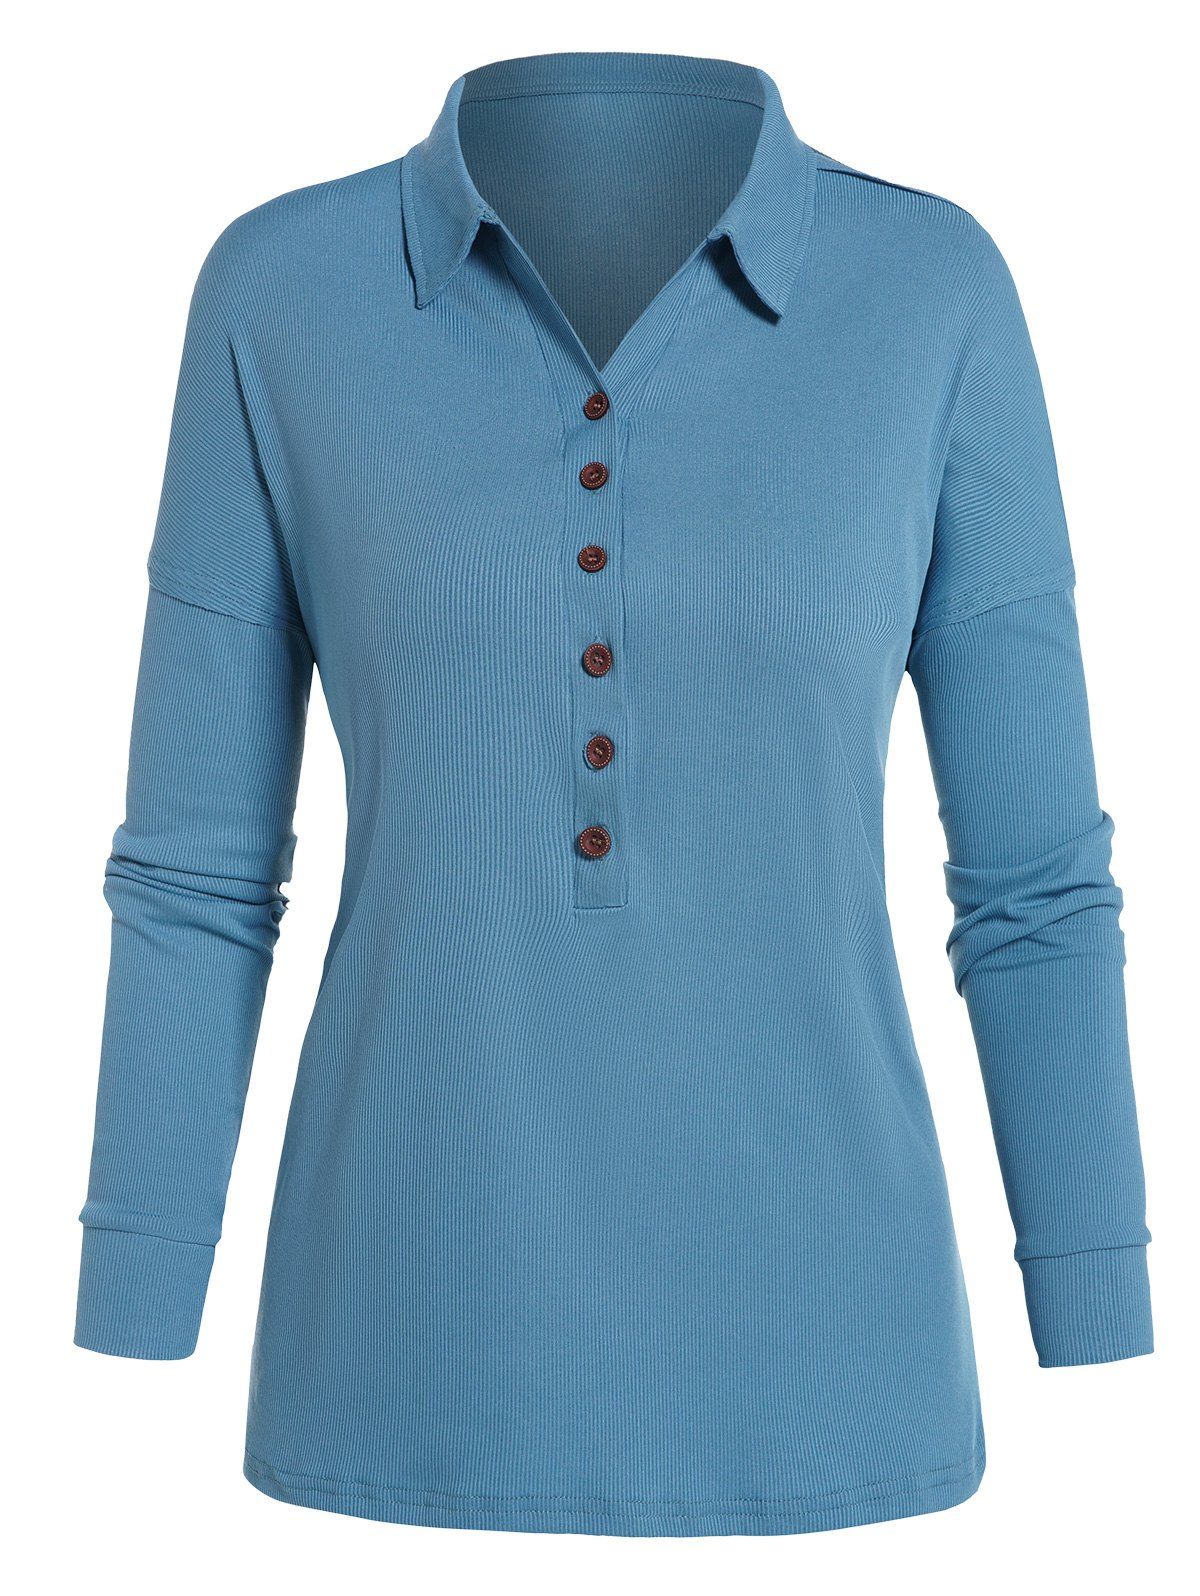 T-shirt Texturé Simple à Demi-Bouton Manches Longues à Col Relevé - Bleu clair M